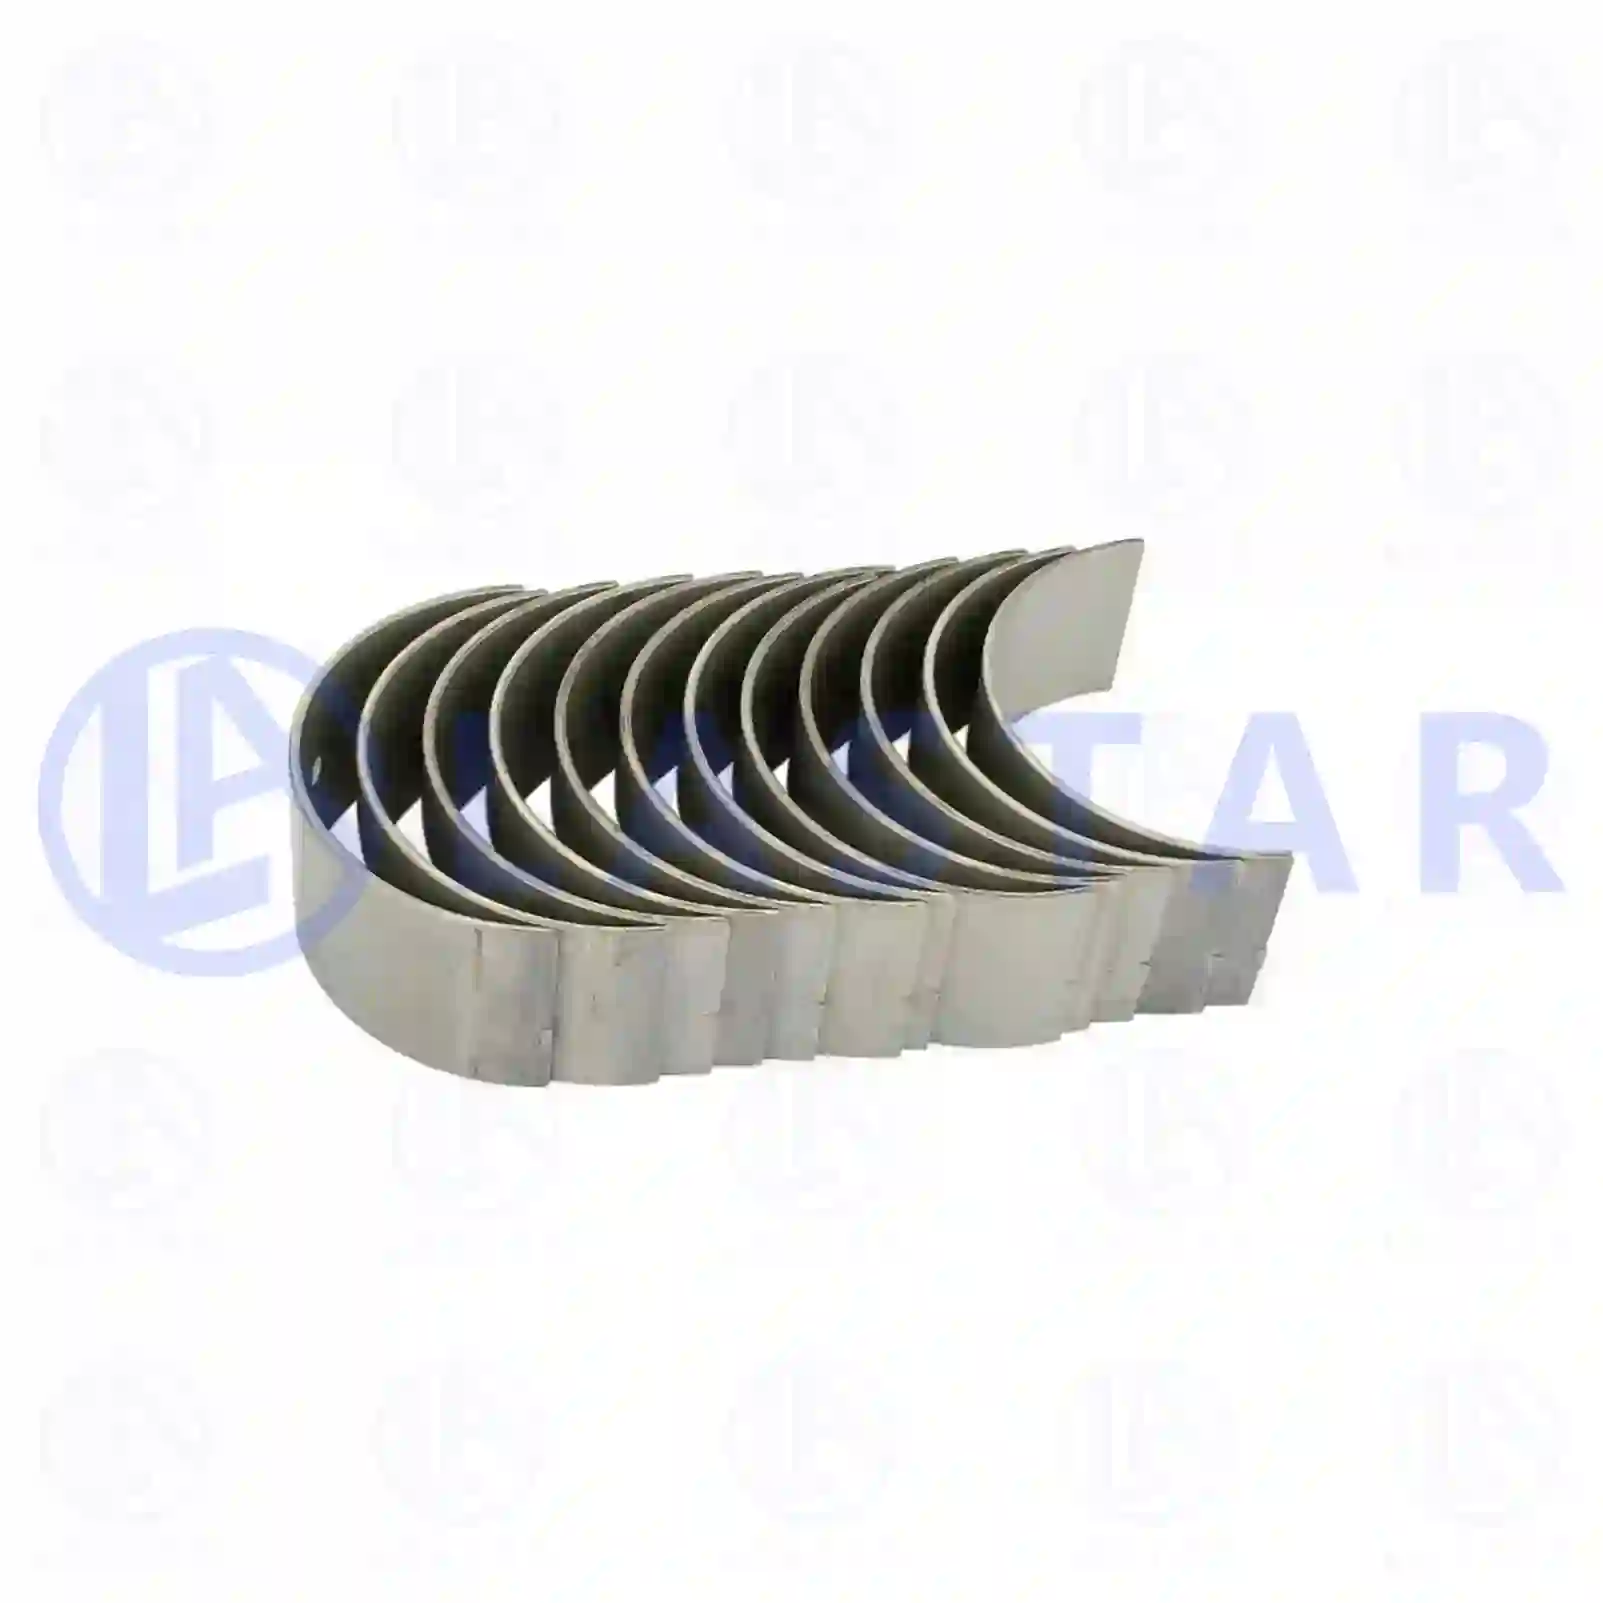 Crankshaft Con rod bearing kit, la no: 77701018 ,  oem no:51024106626S Lastar Spare Part | Truck Spare Parts, Auotomotive Spare Parts